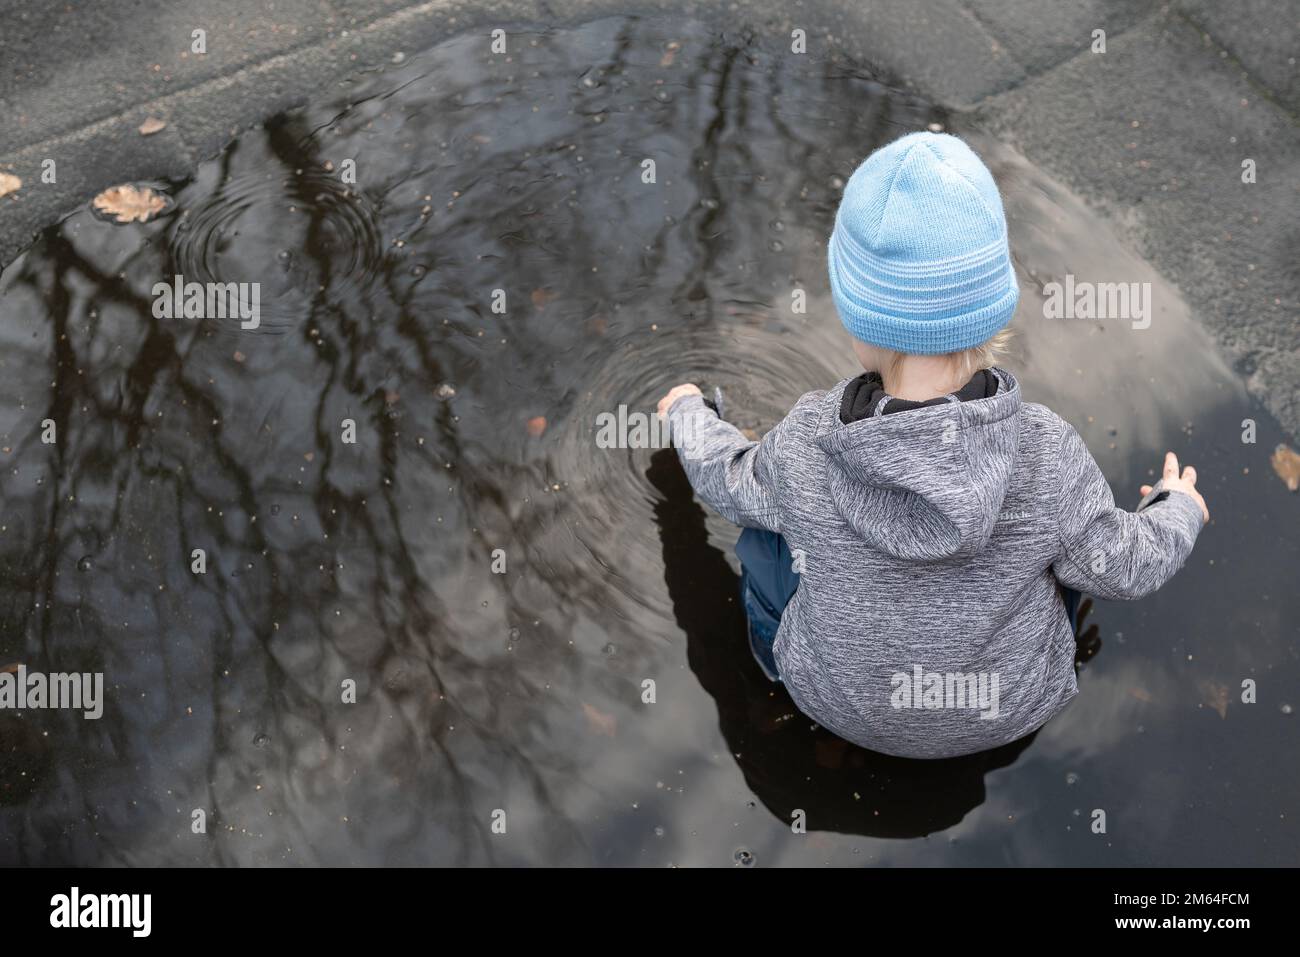 vue panoramique d'un garçon de deux ans jouant dans un flaque d'eau après une douche à effet pluie Banque D'Images